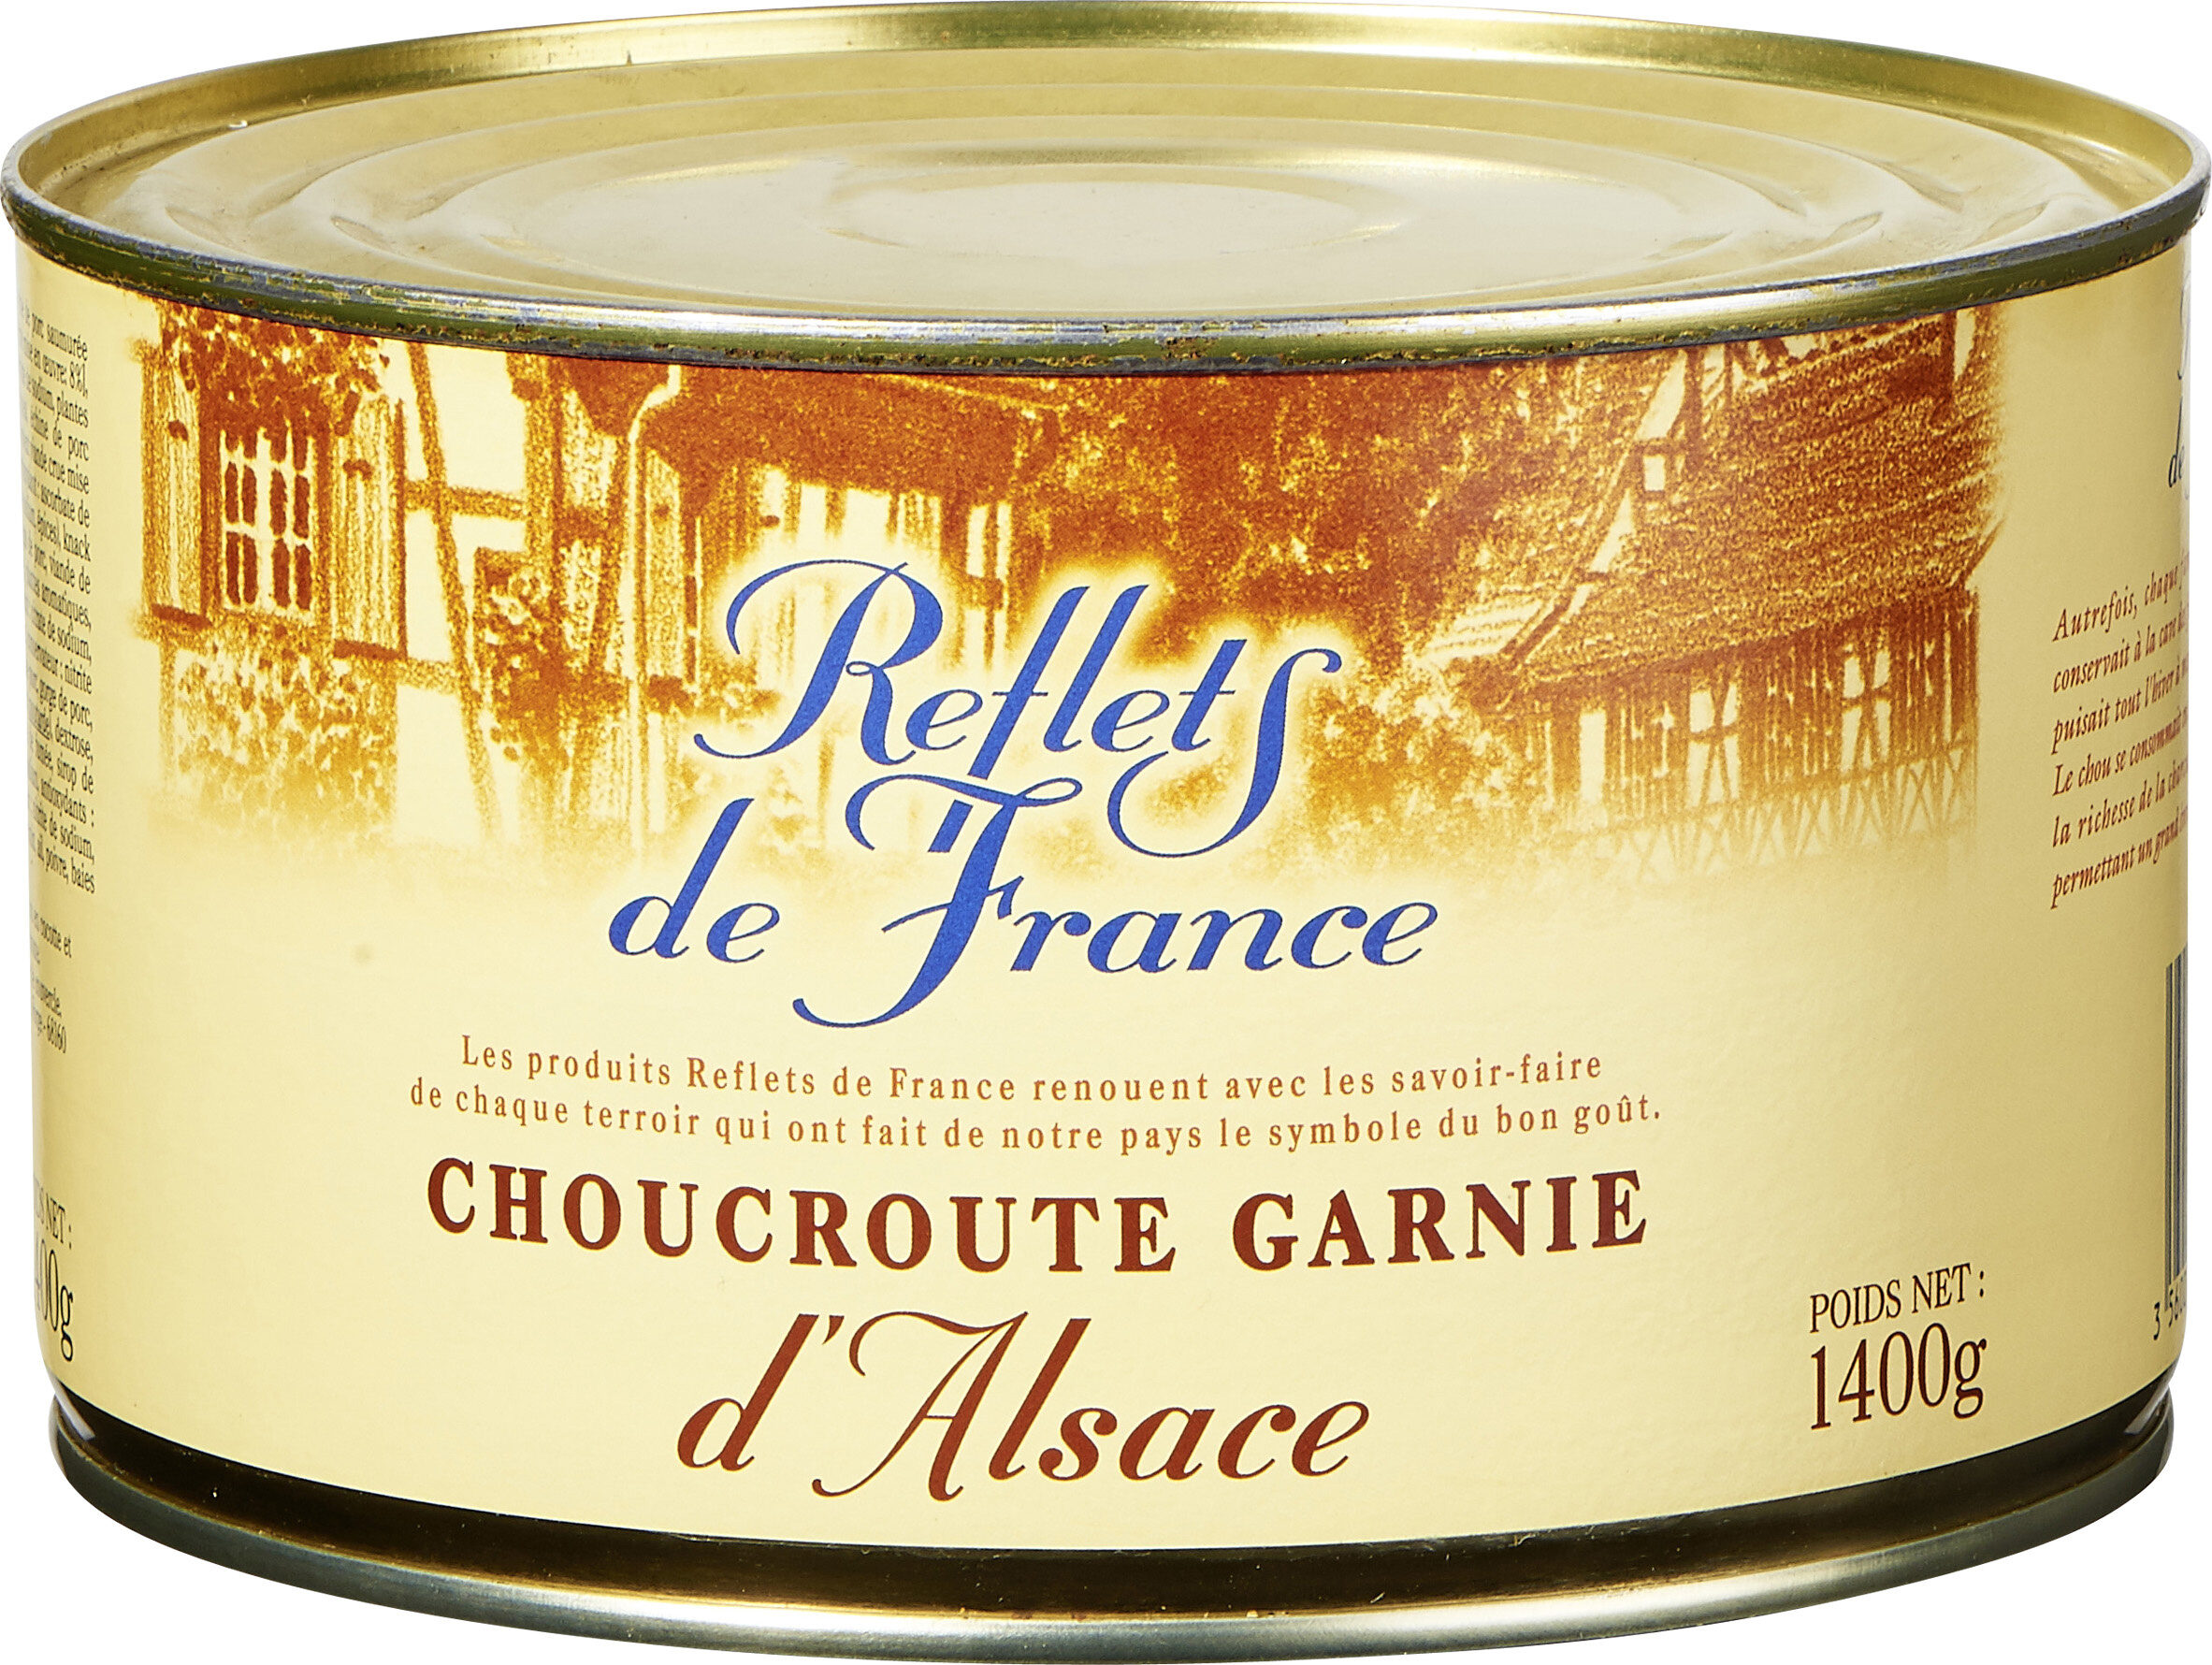 Choucroute Garnie d'Alsace - Product - fr